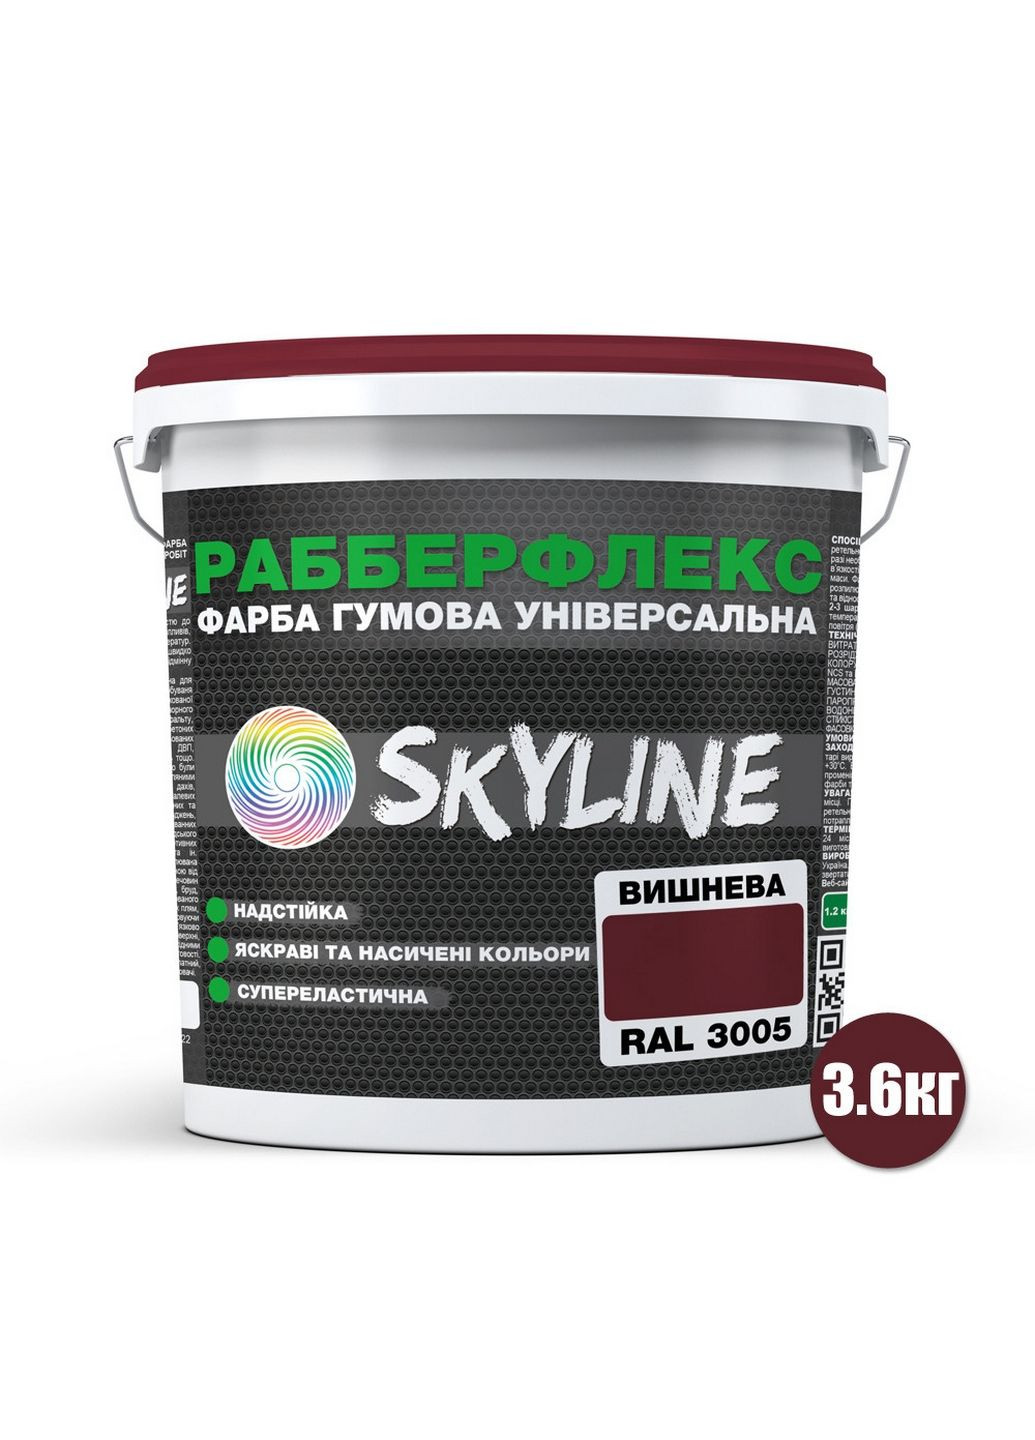 Надстійка фарба гумова супереластична «РабберФлекс» 3,6 кг SkyLine (289363759)